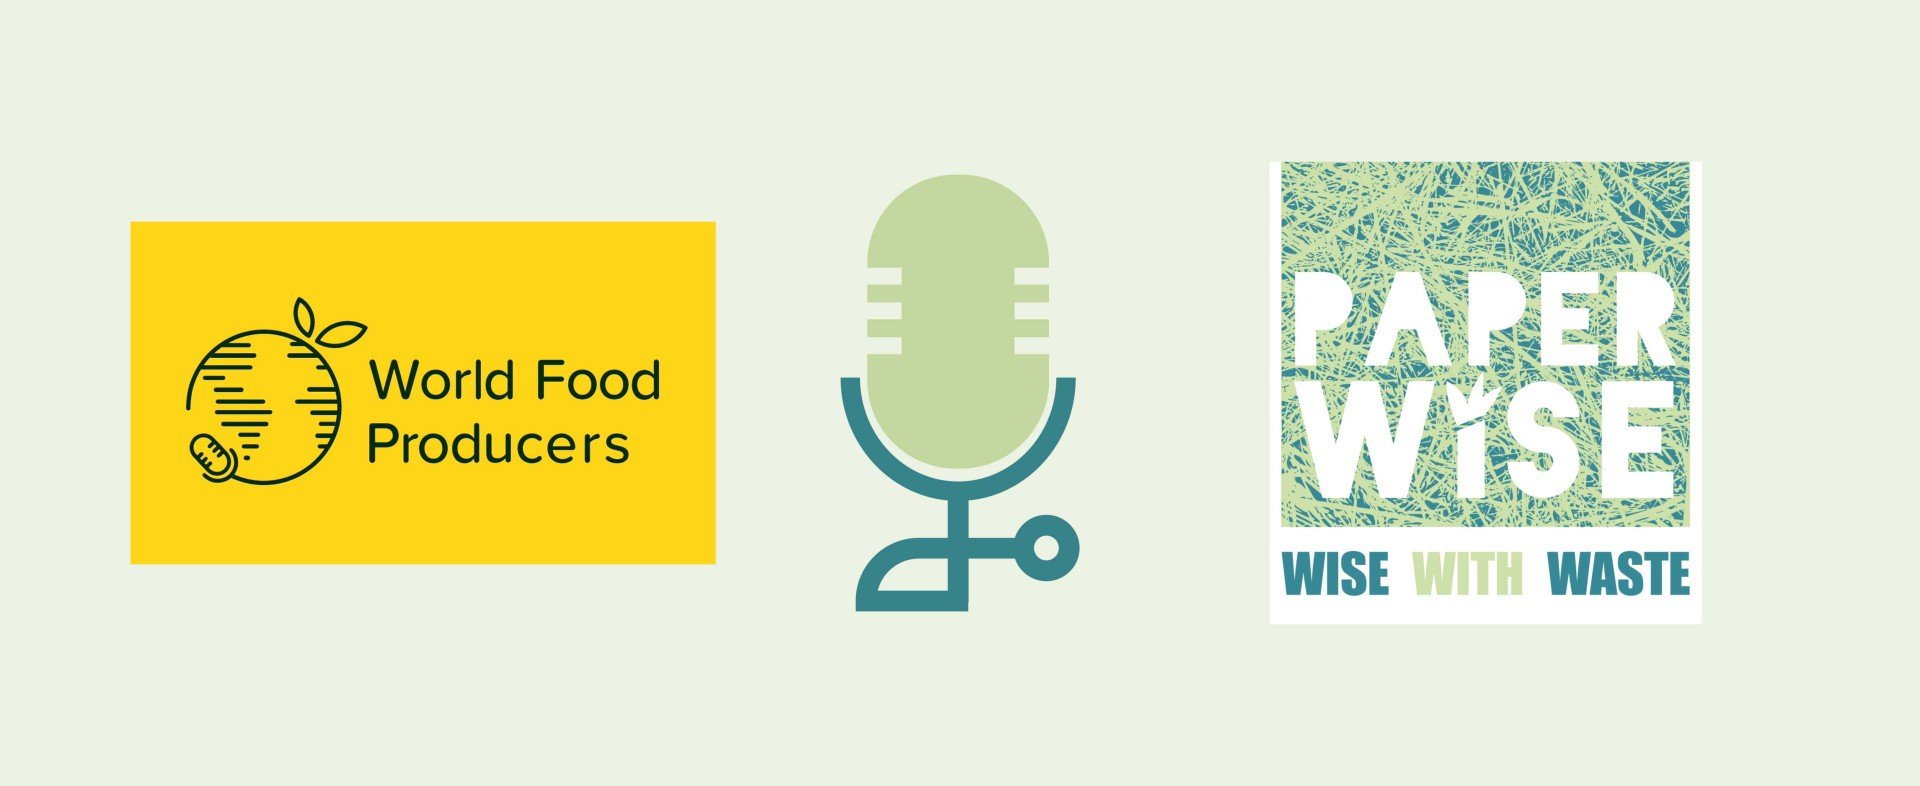 World Food Producers intervjuer PaperWise-grunnlegger Peter van Rosmalen